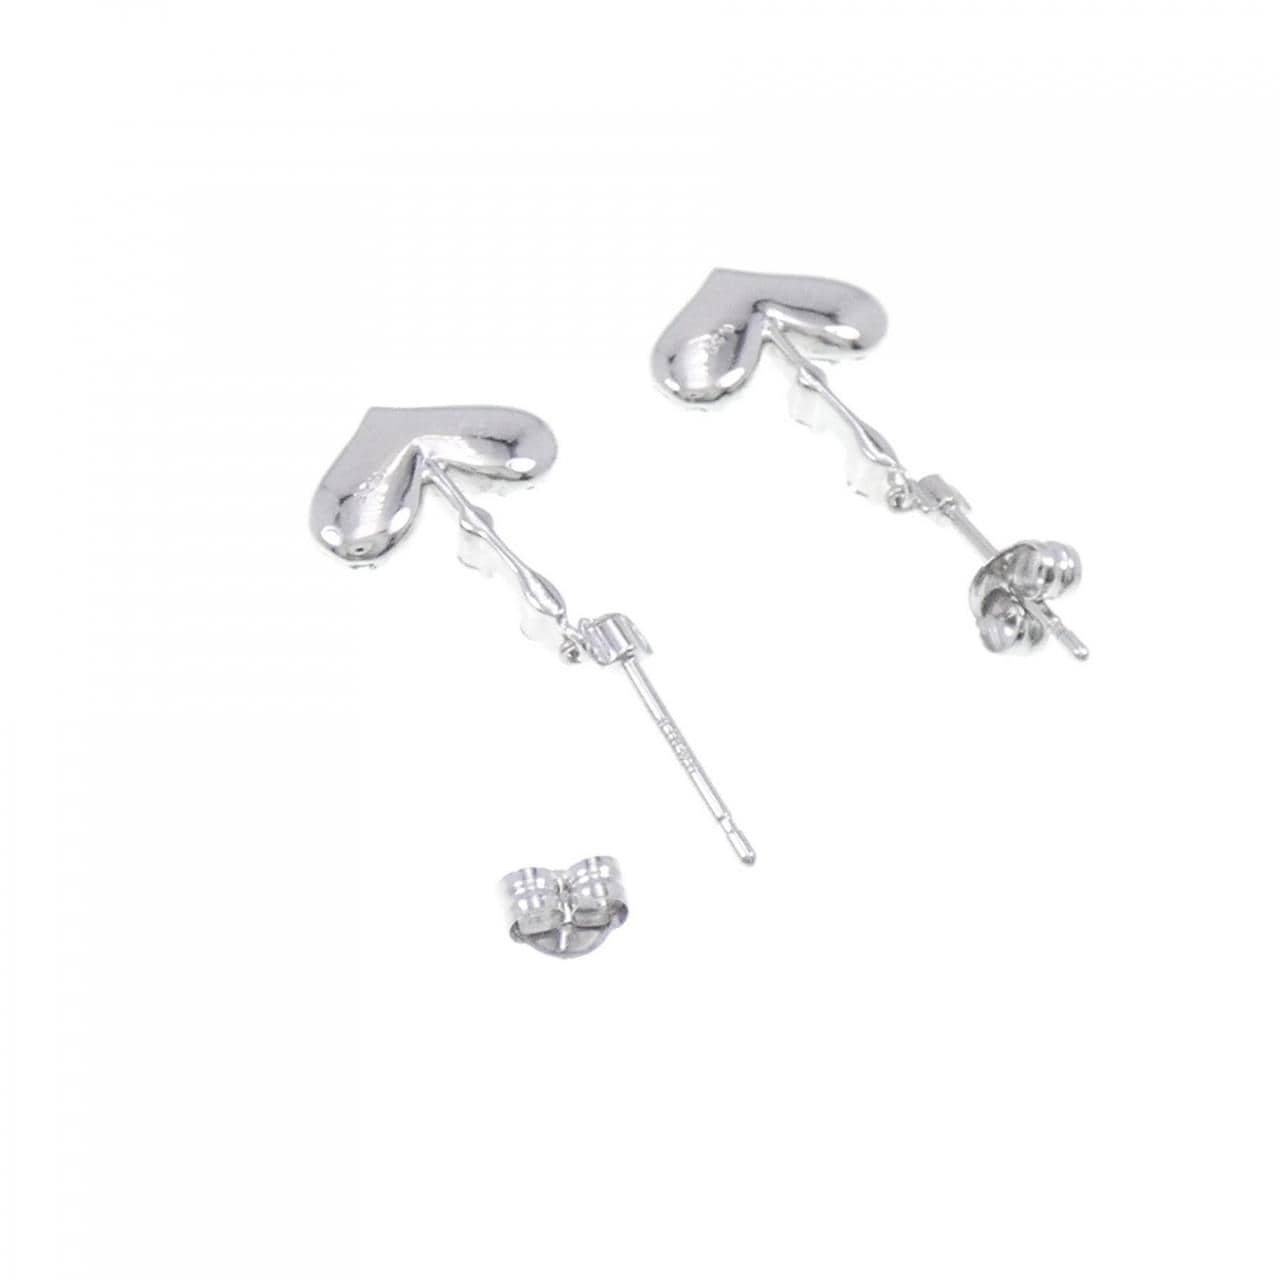 K18WG pave heart Diamond earrings 0.50CT